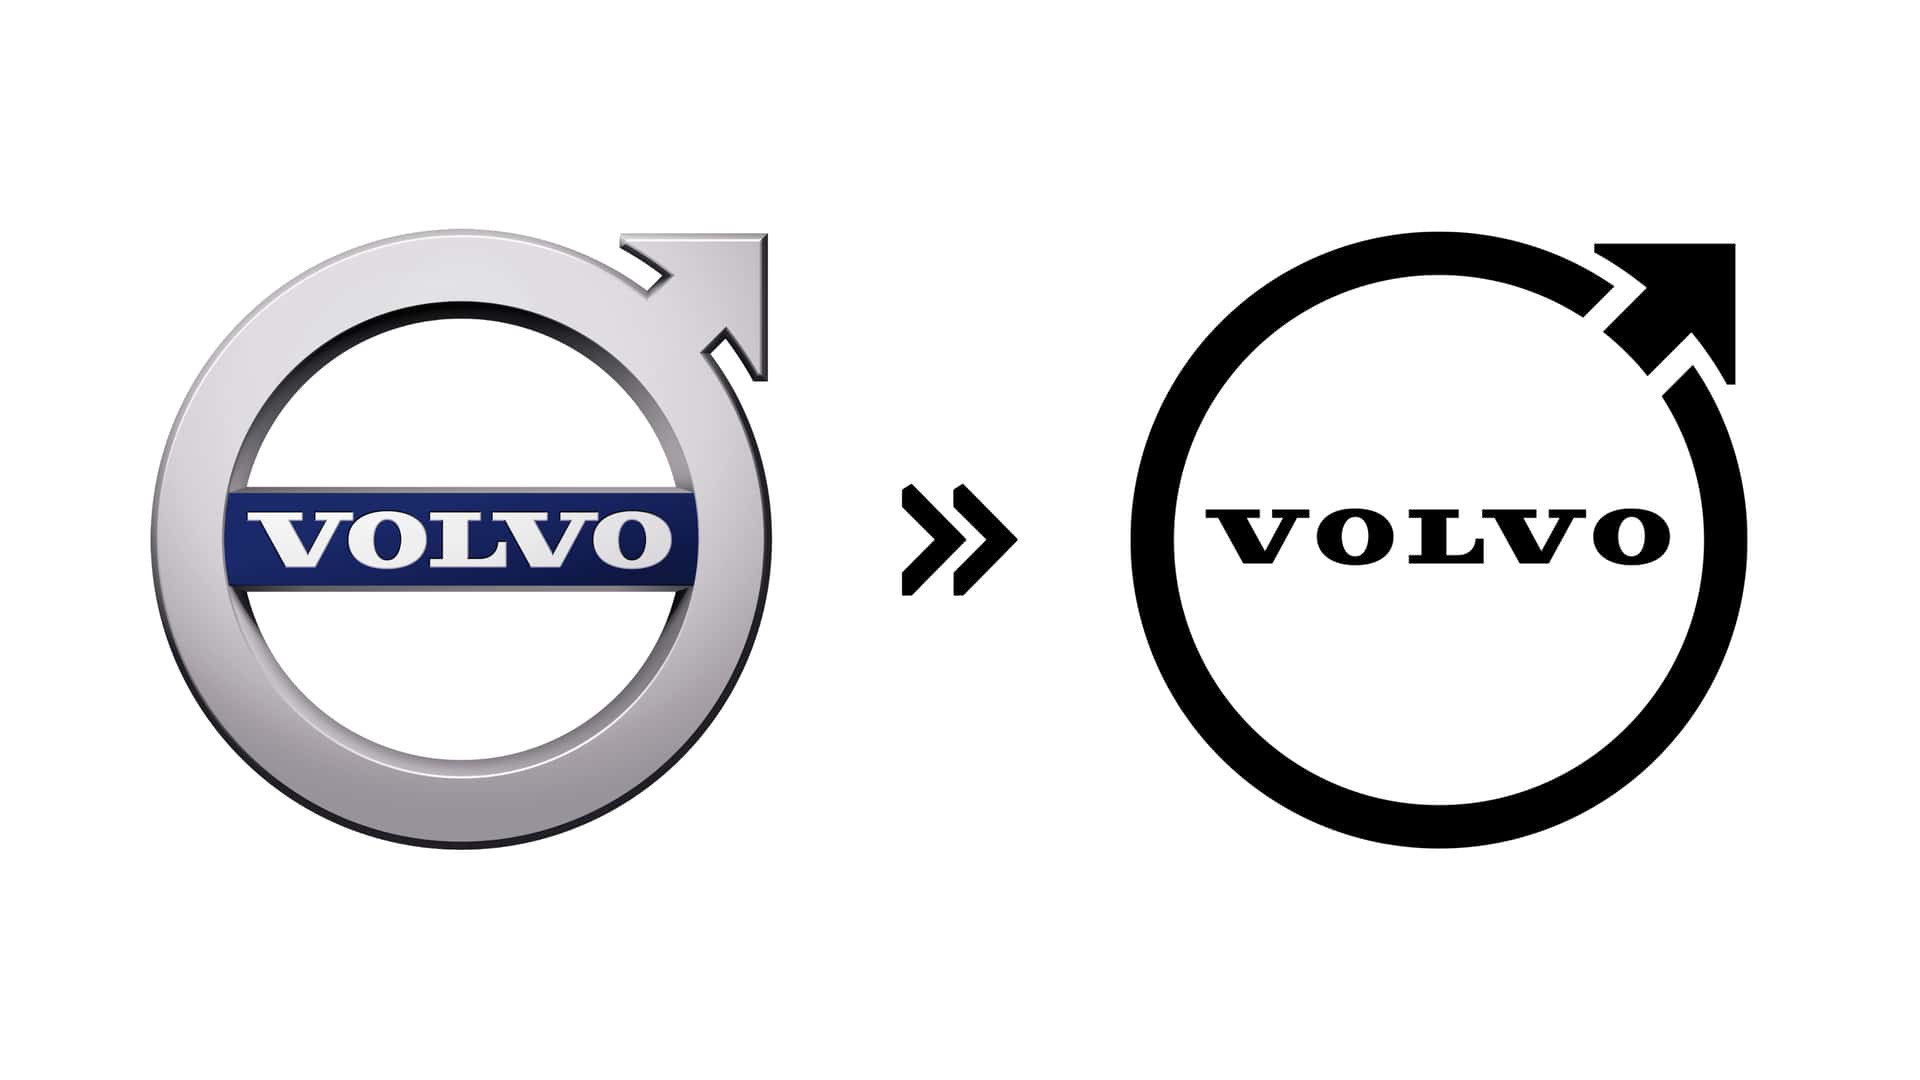 Volvo (2021): Volvo lặng lẽ cập nhật logo của mình vào năm 2021 với phong cách phẳng gọn gàng và đơn giản hơn. Ngoài ra, họ cũng bỏ luôn phần khối bao quanh dòng chữ Volvo trước đây - Ảnh: Motor1